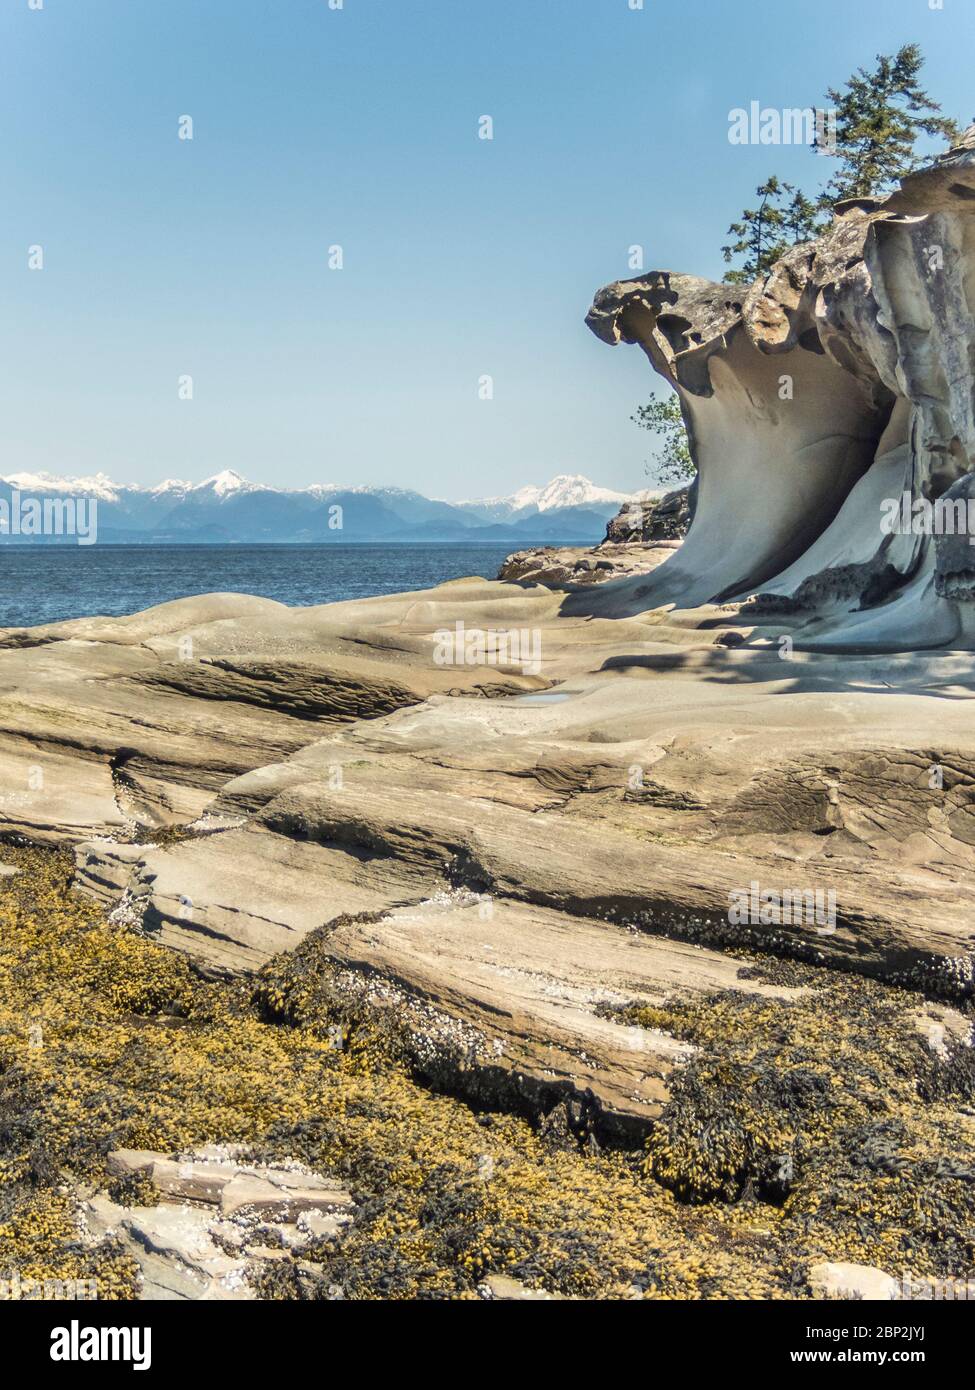 En la marea baja se observan rocas en capas, algas marinas y arcos de arenisca erosionados en un islote, con vistas al estrecho de Georgia y a las montañas de la costa más allá. Foto de stock